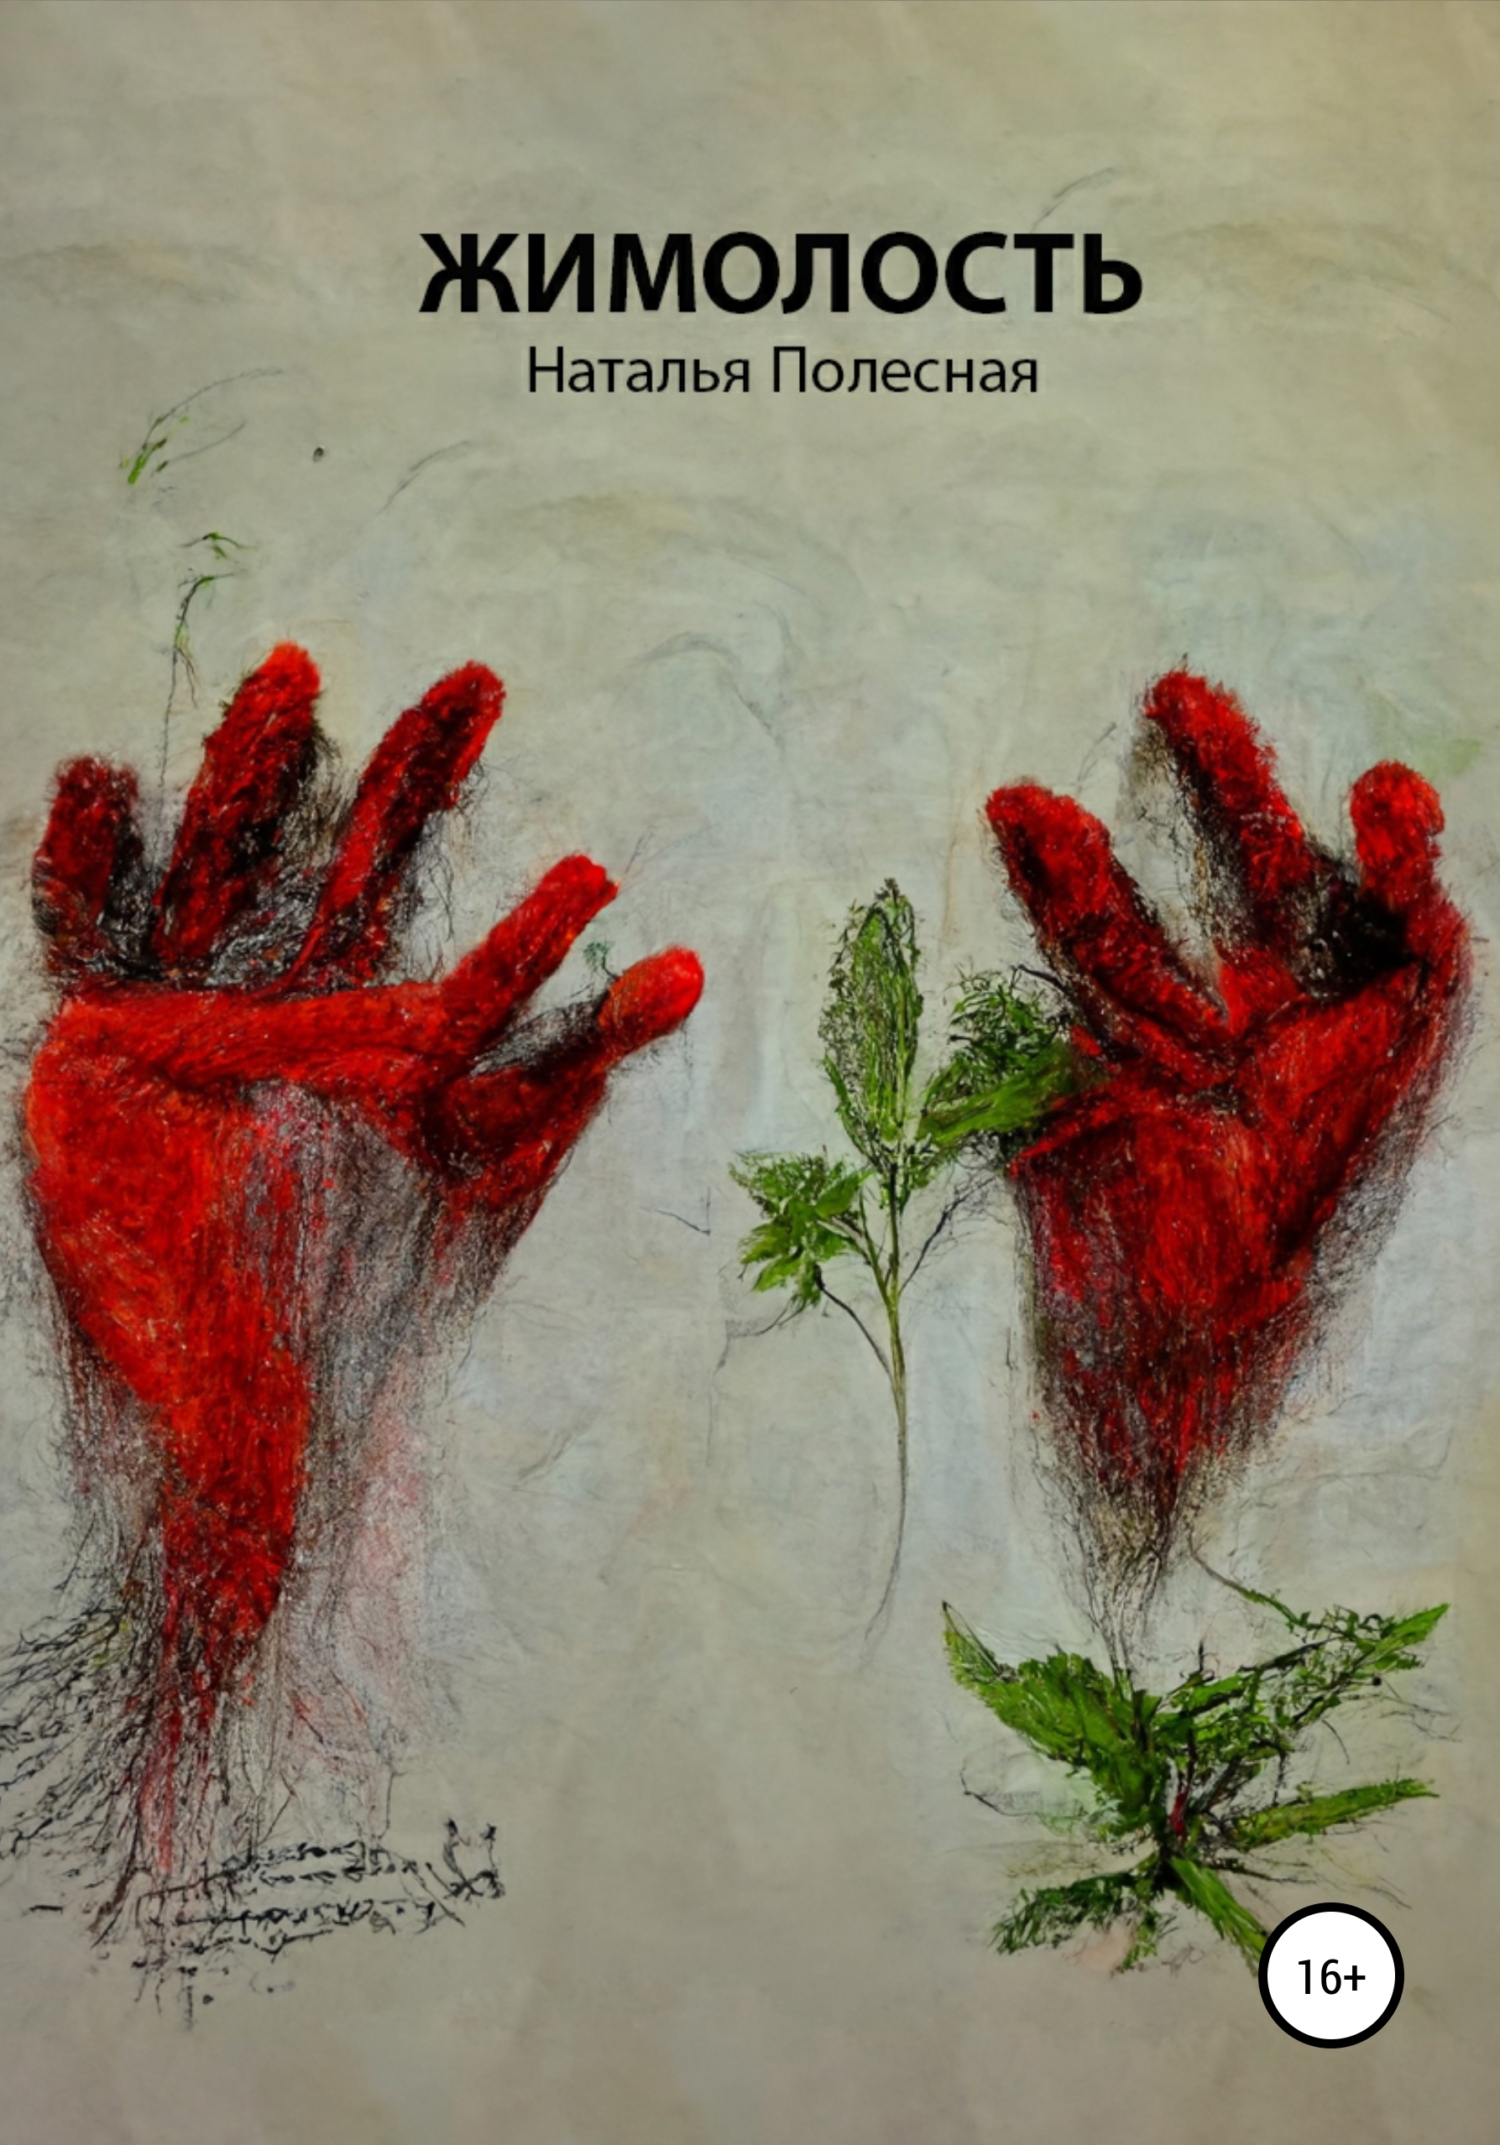 Пьеса «Жимолость», , Наталья Полесная – скачать книгу бесплатно fb2, epub,  pdf на ЛитРес